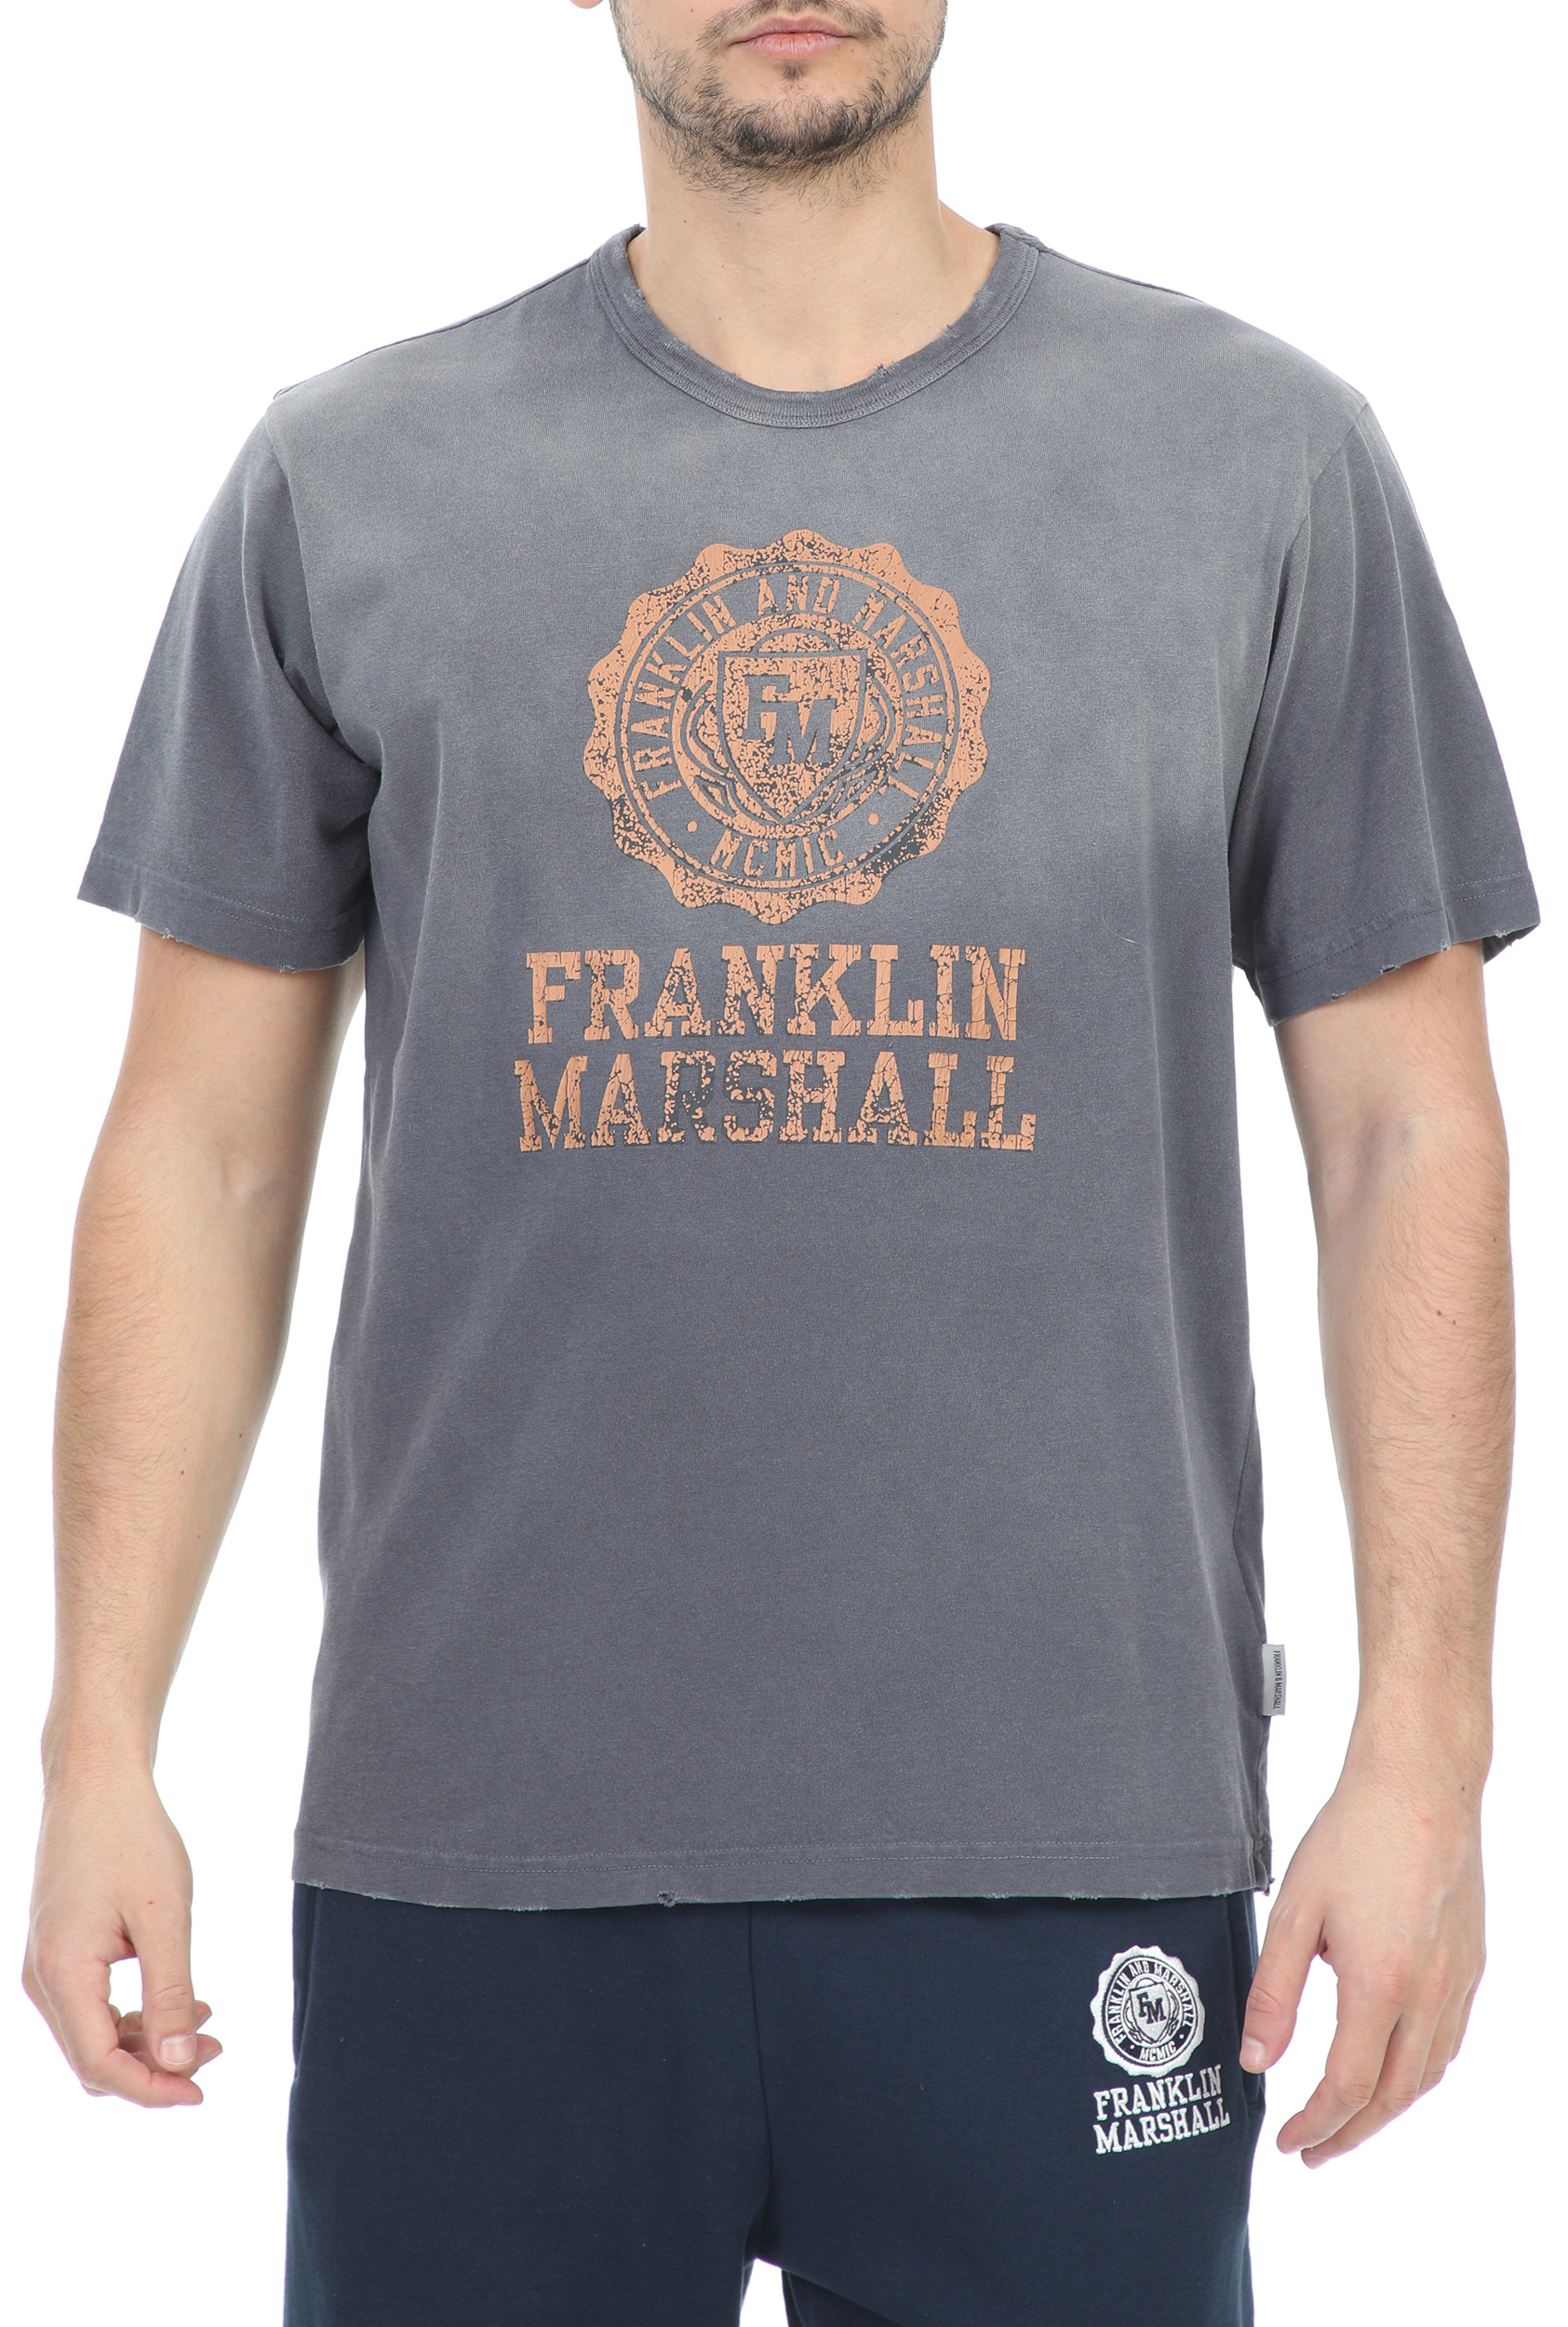 Ανδρικά/Ρούχα/Μπλούζες/Κοντομάνικες FRANKLIN & MARSHALL - Ανδρικό t-shirt FRANKLIN & MARSHALL SUPER VINTAGE GARMENT γκρι